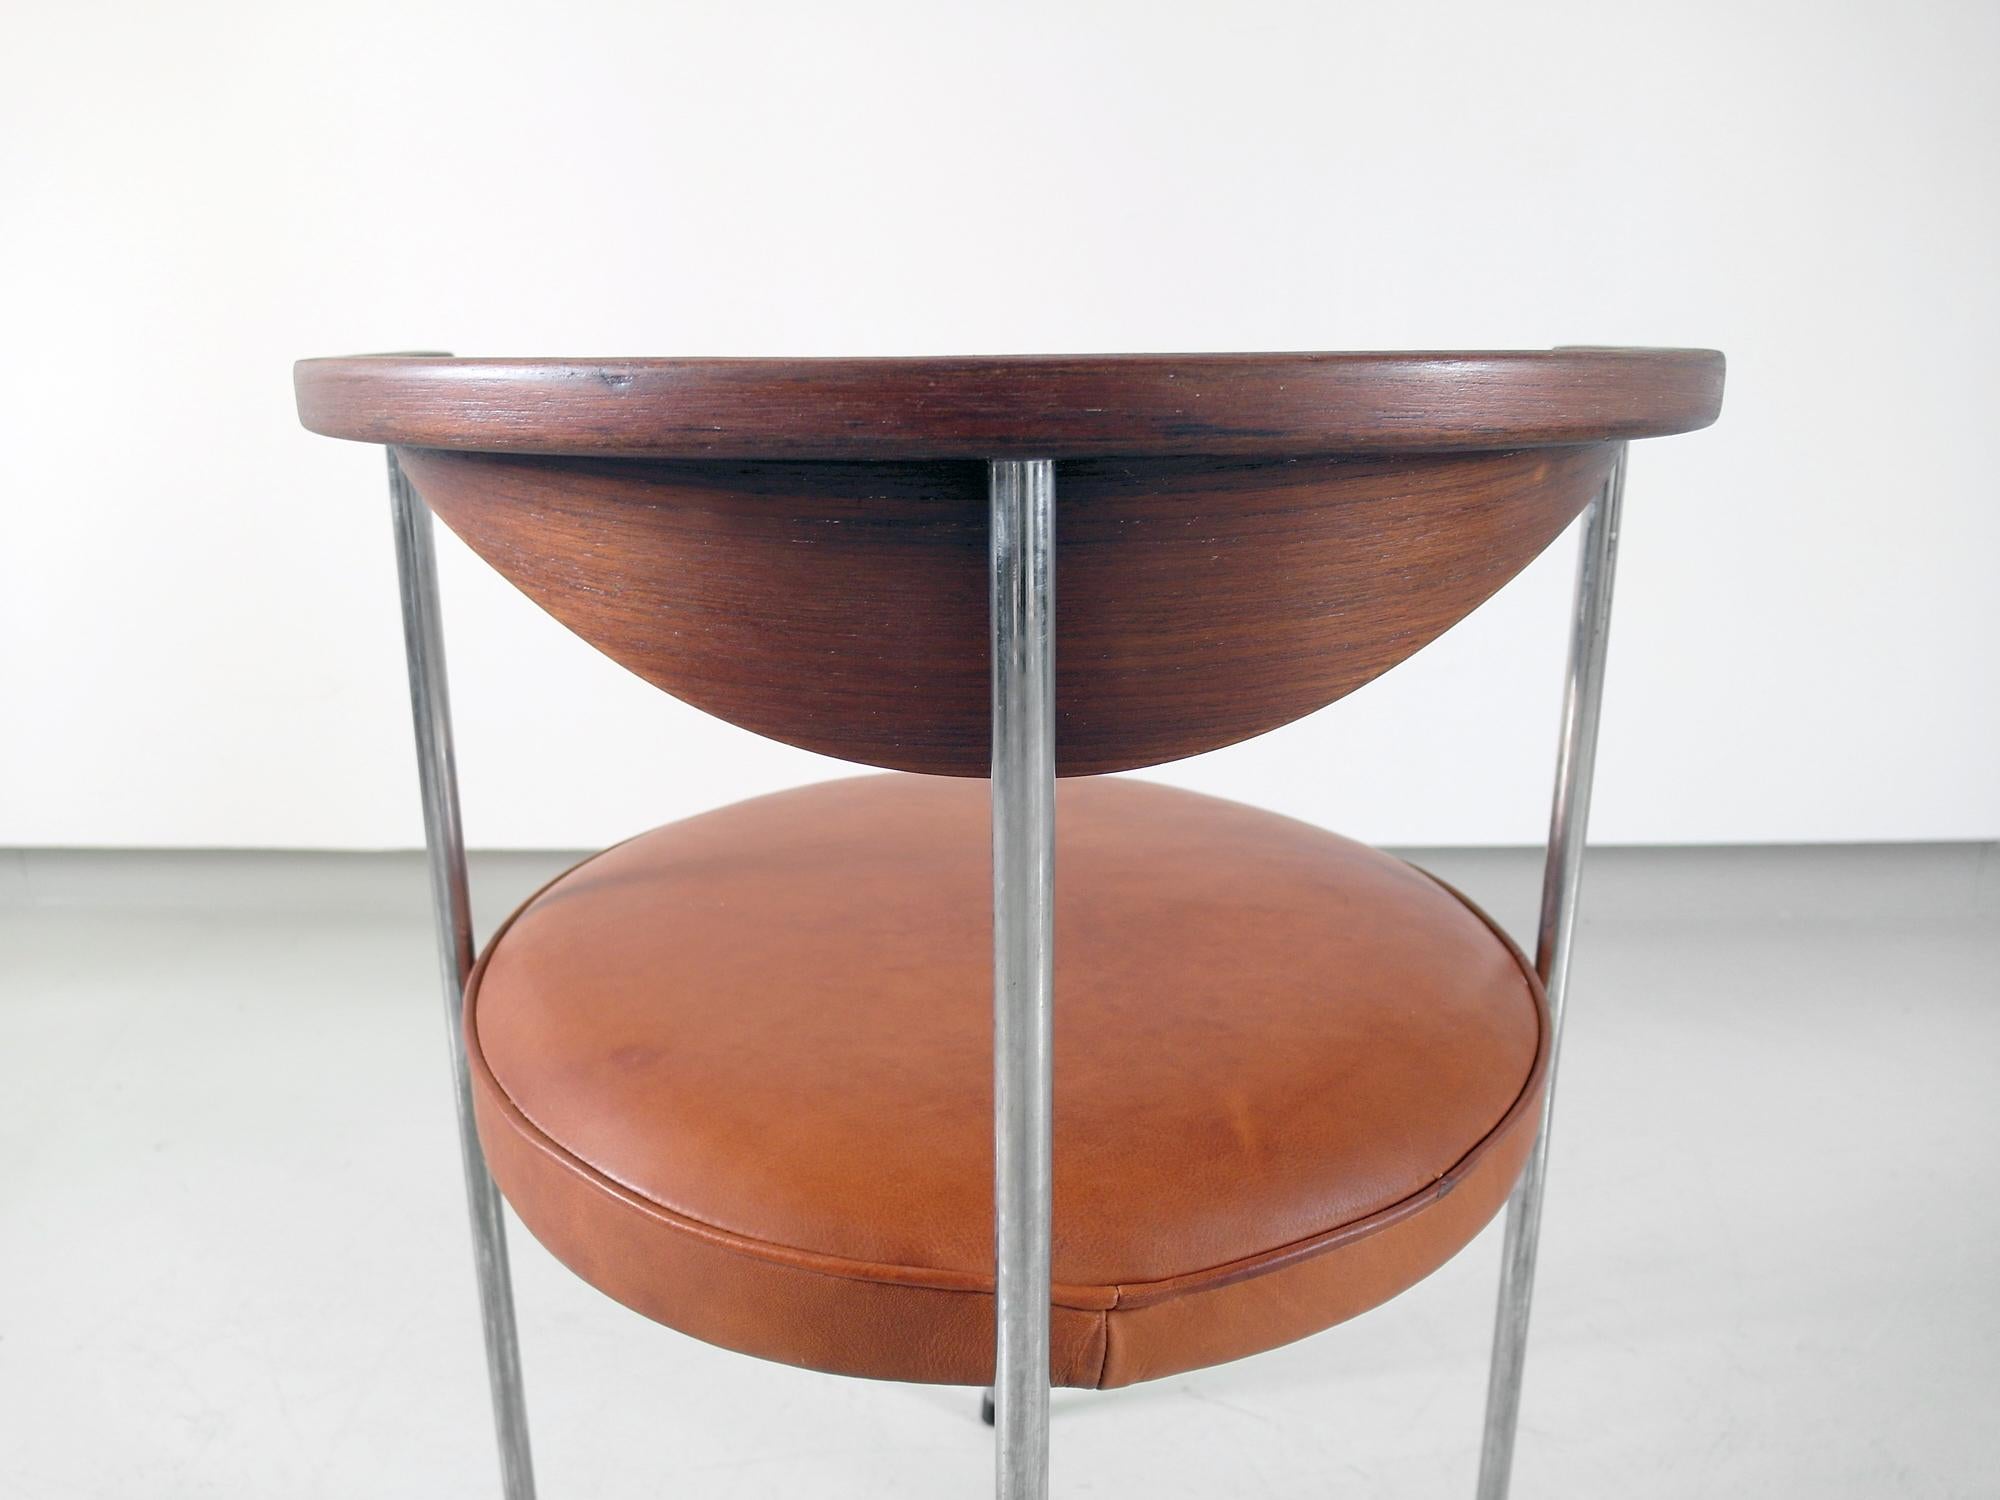 Scandinavian Desk Side Chair by Frederik Sieck for Fritz Hansen, Denmark, 1964 (Dänisch)